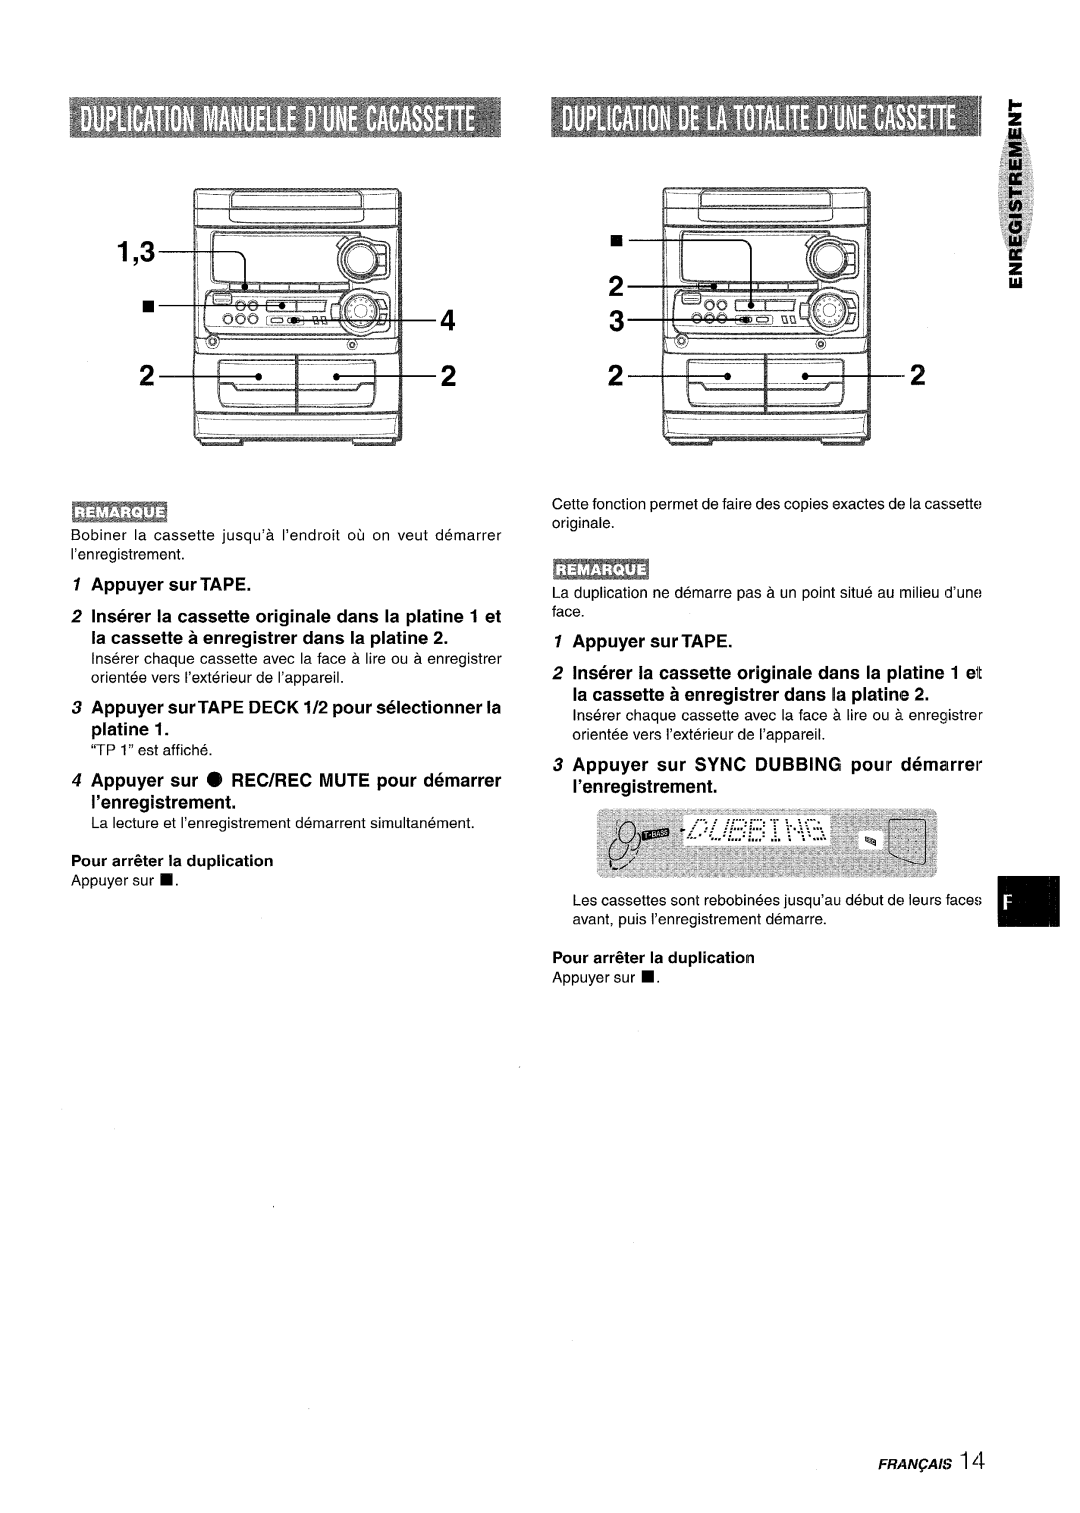 Sony SX-MT321, NSX-MT320 manual Appuyer surTAPE DECK 1/2 pour selectionner la piatine 